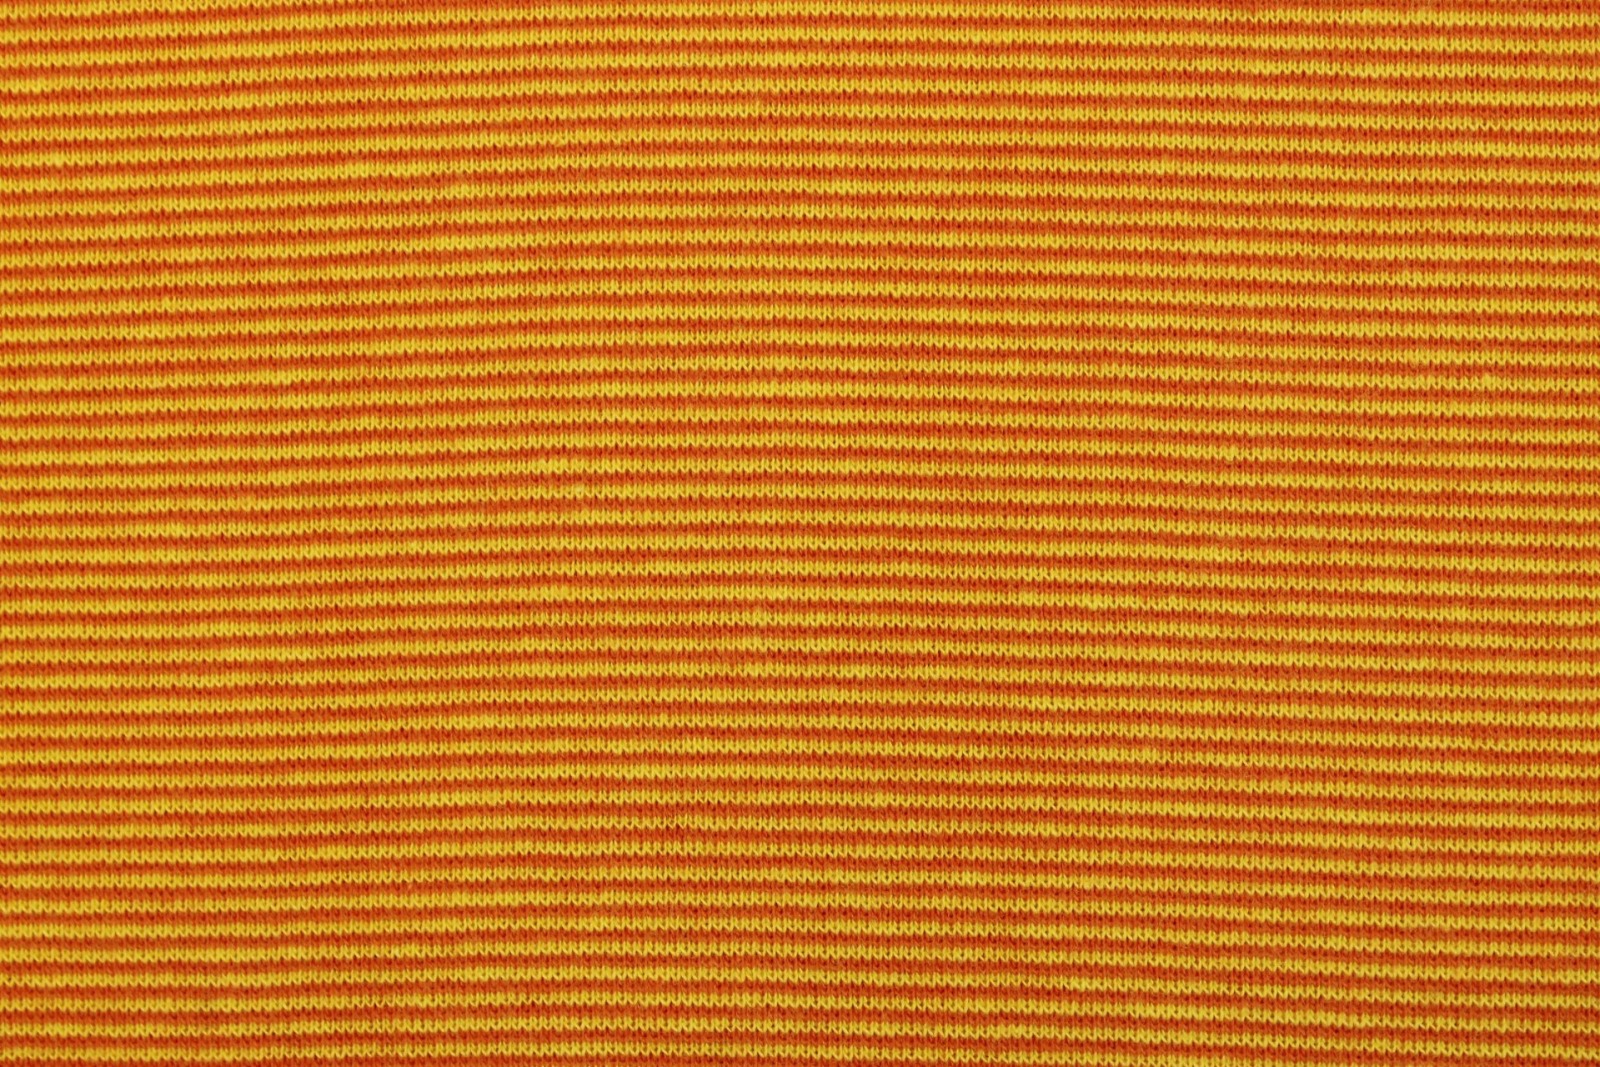 05m Ringelbündchen Bündchen glatt Streifen gelb orange 2